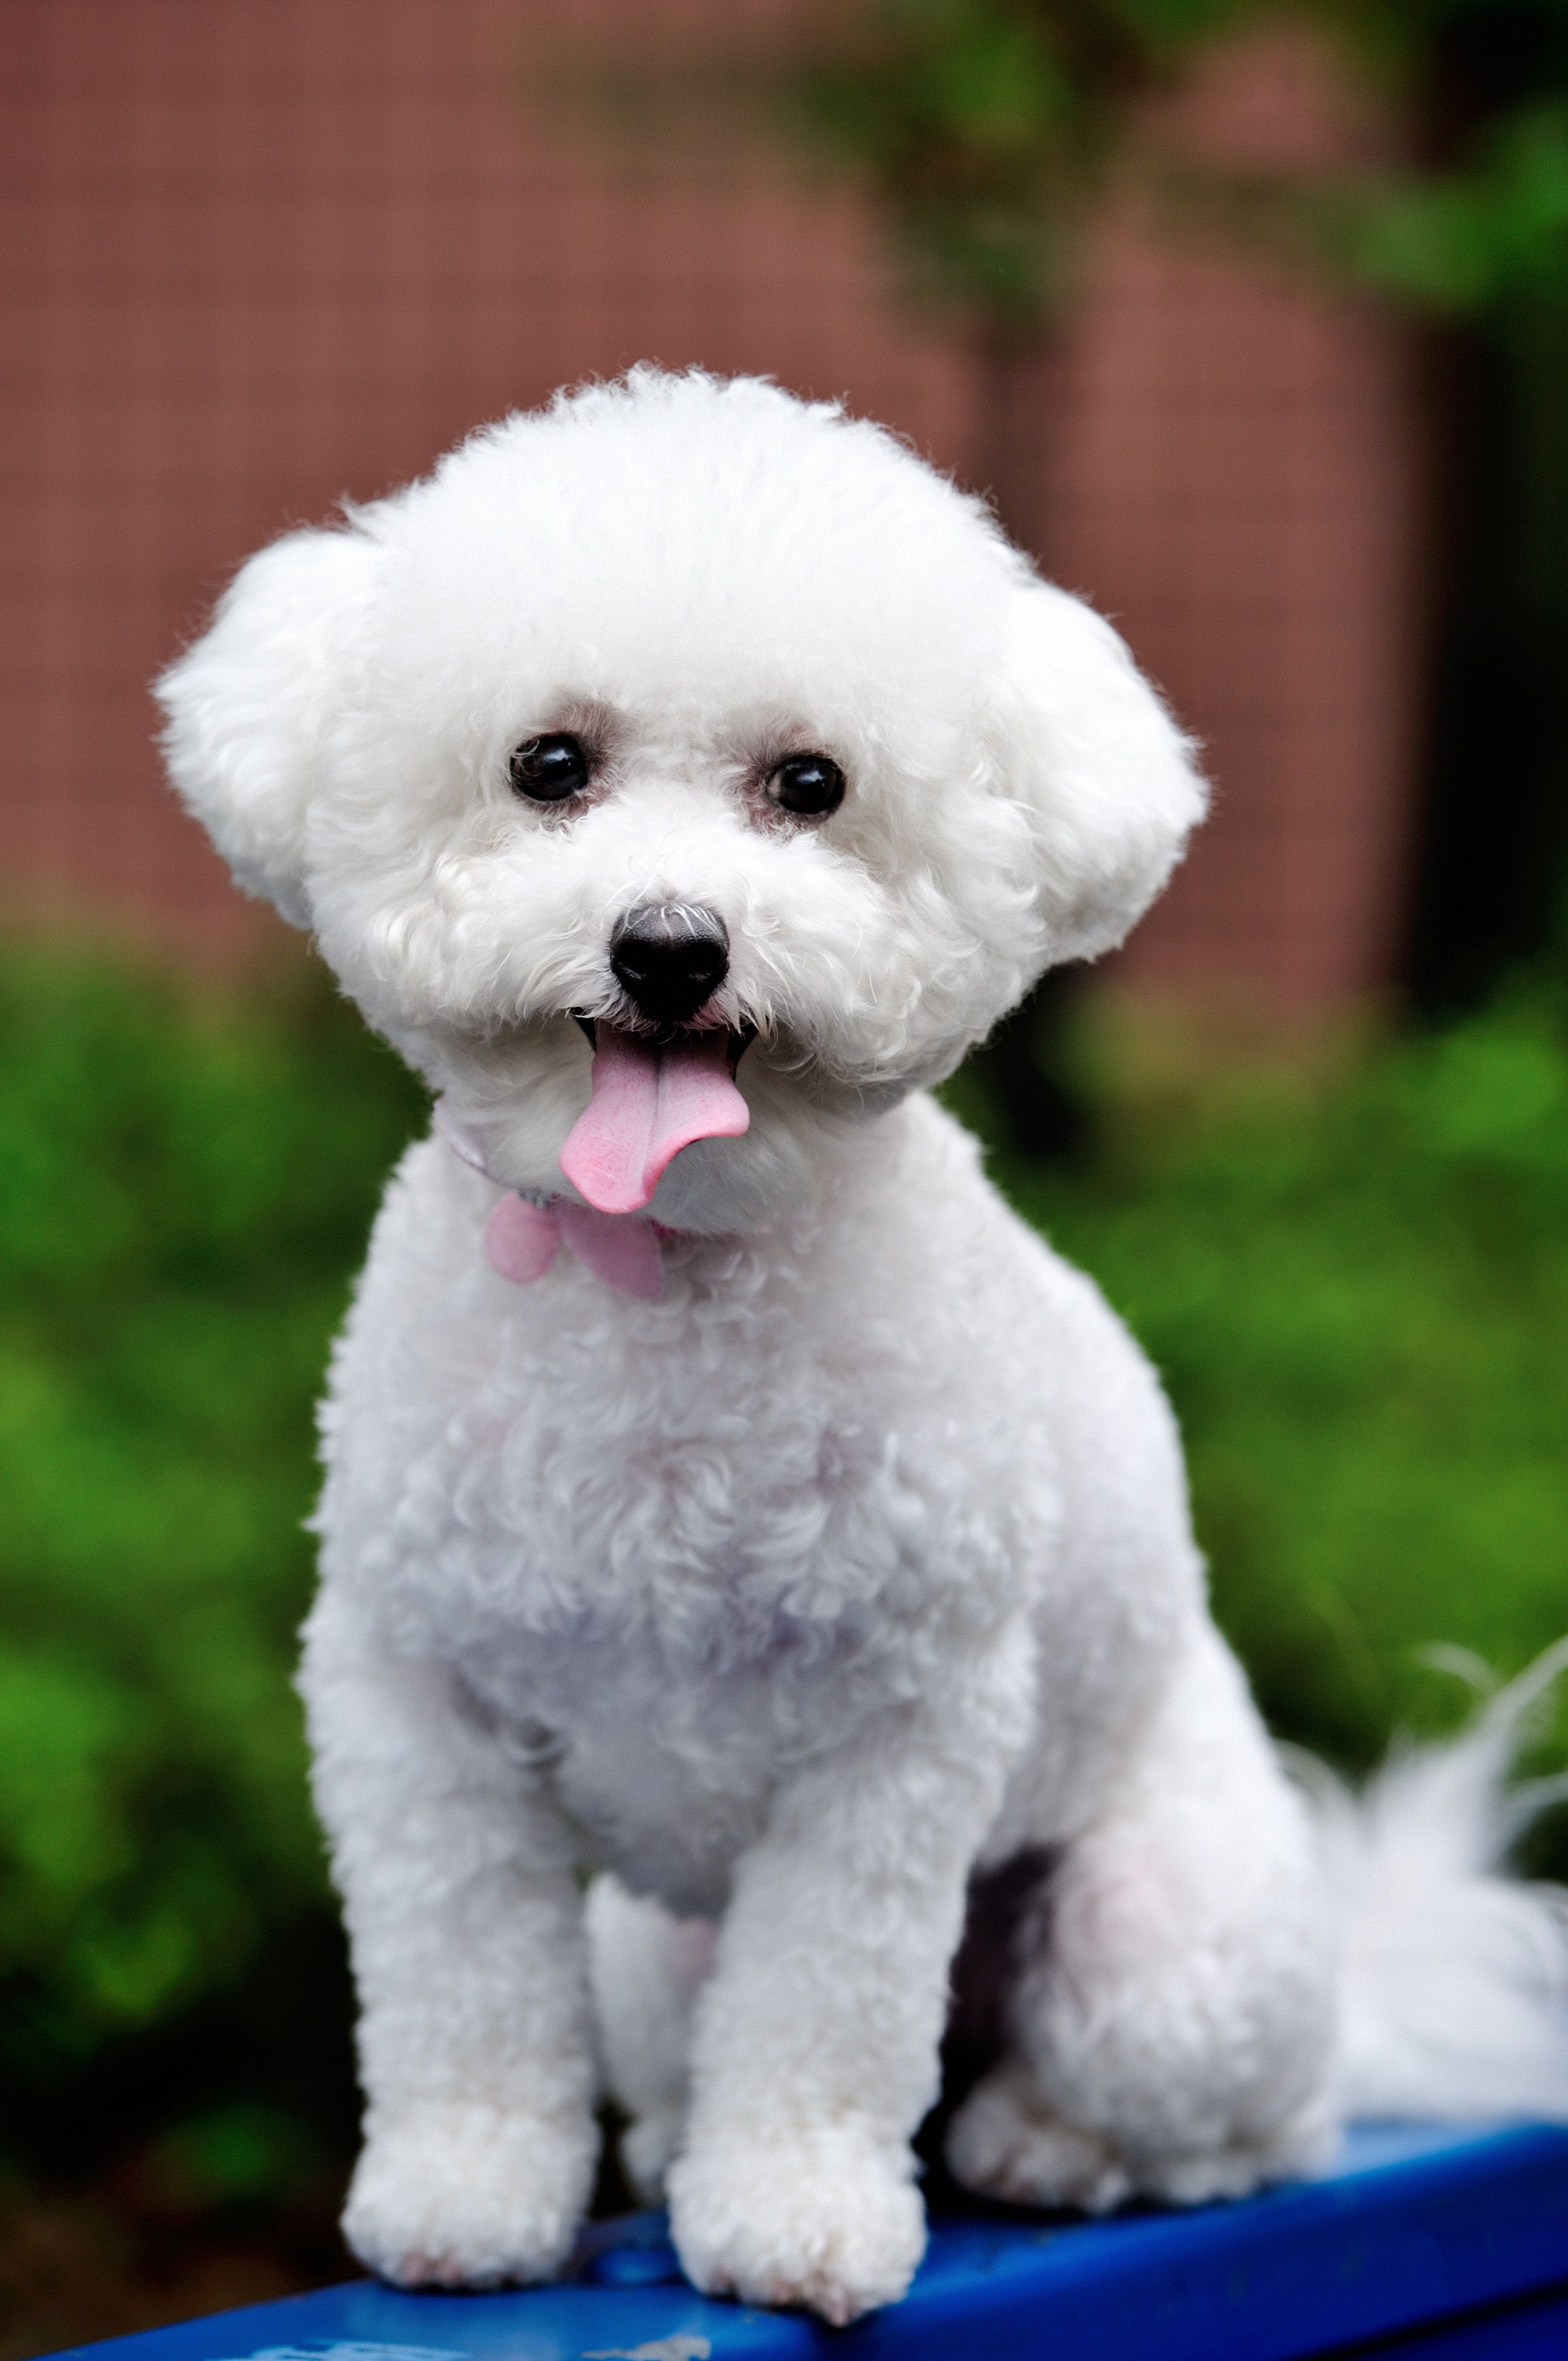 tiny white fluffy dog